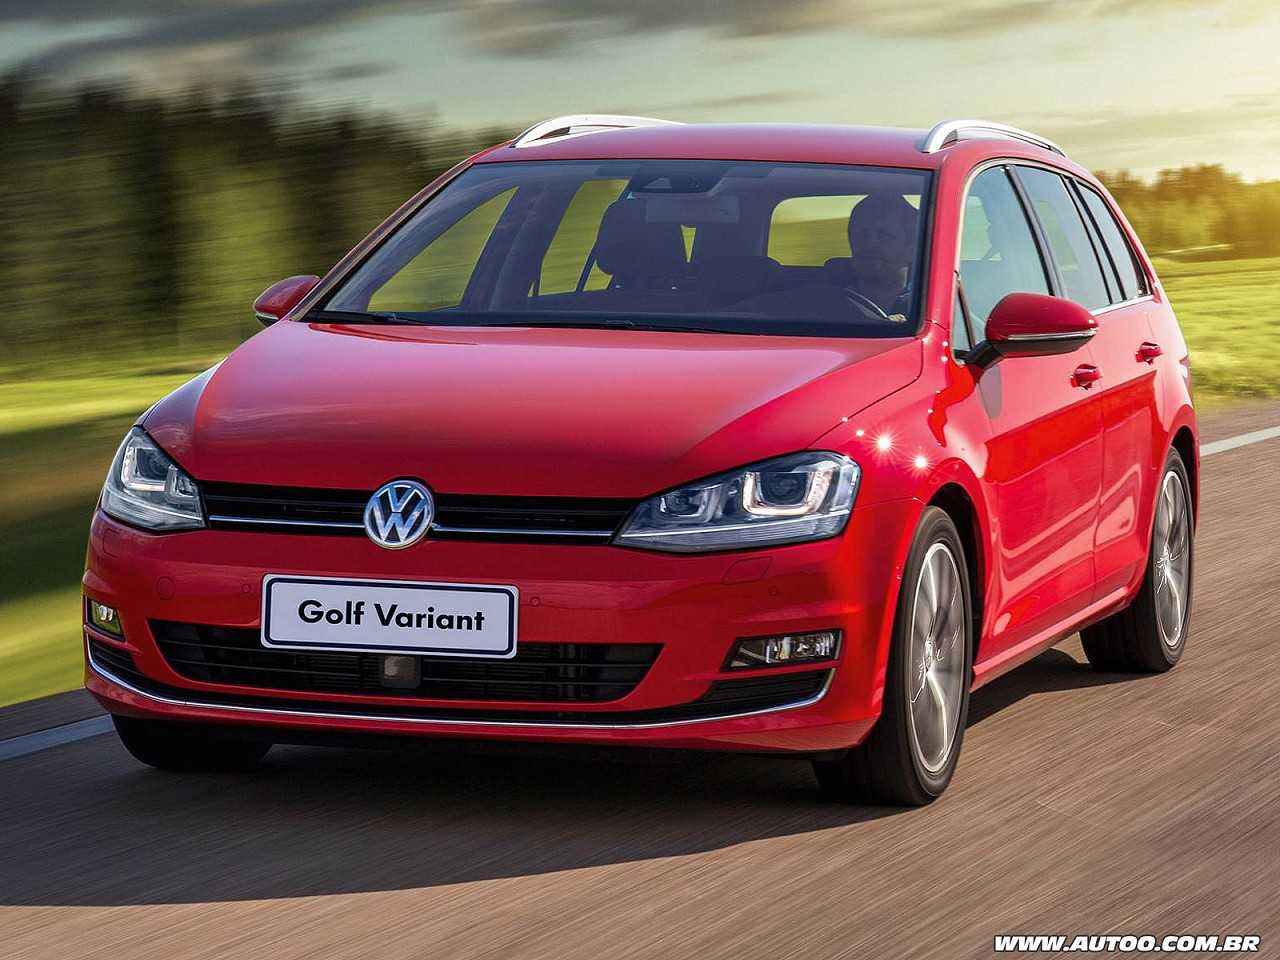 Achado usado: vai um Volkswagen Golf seis cilindros?